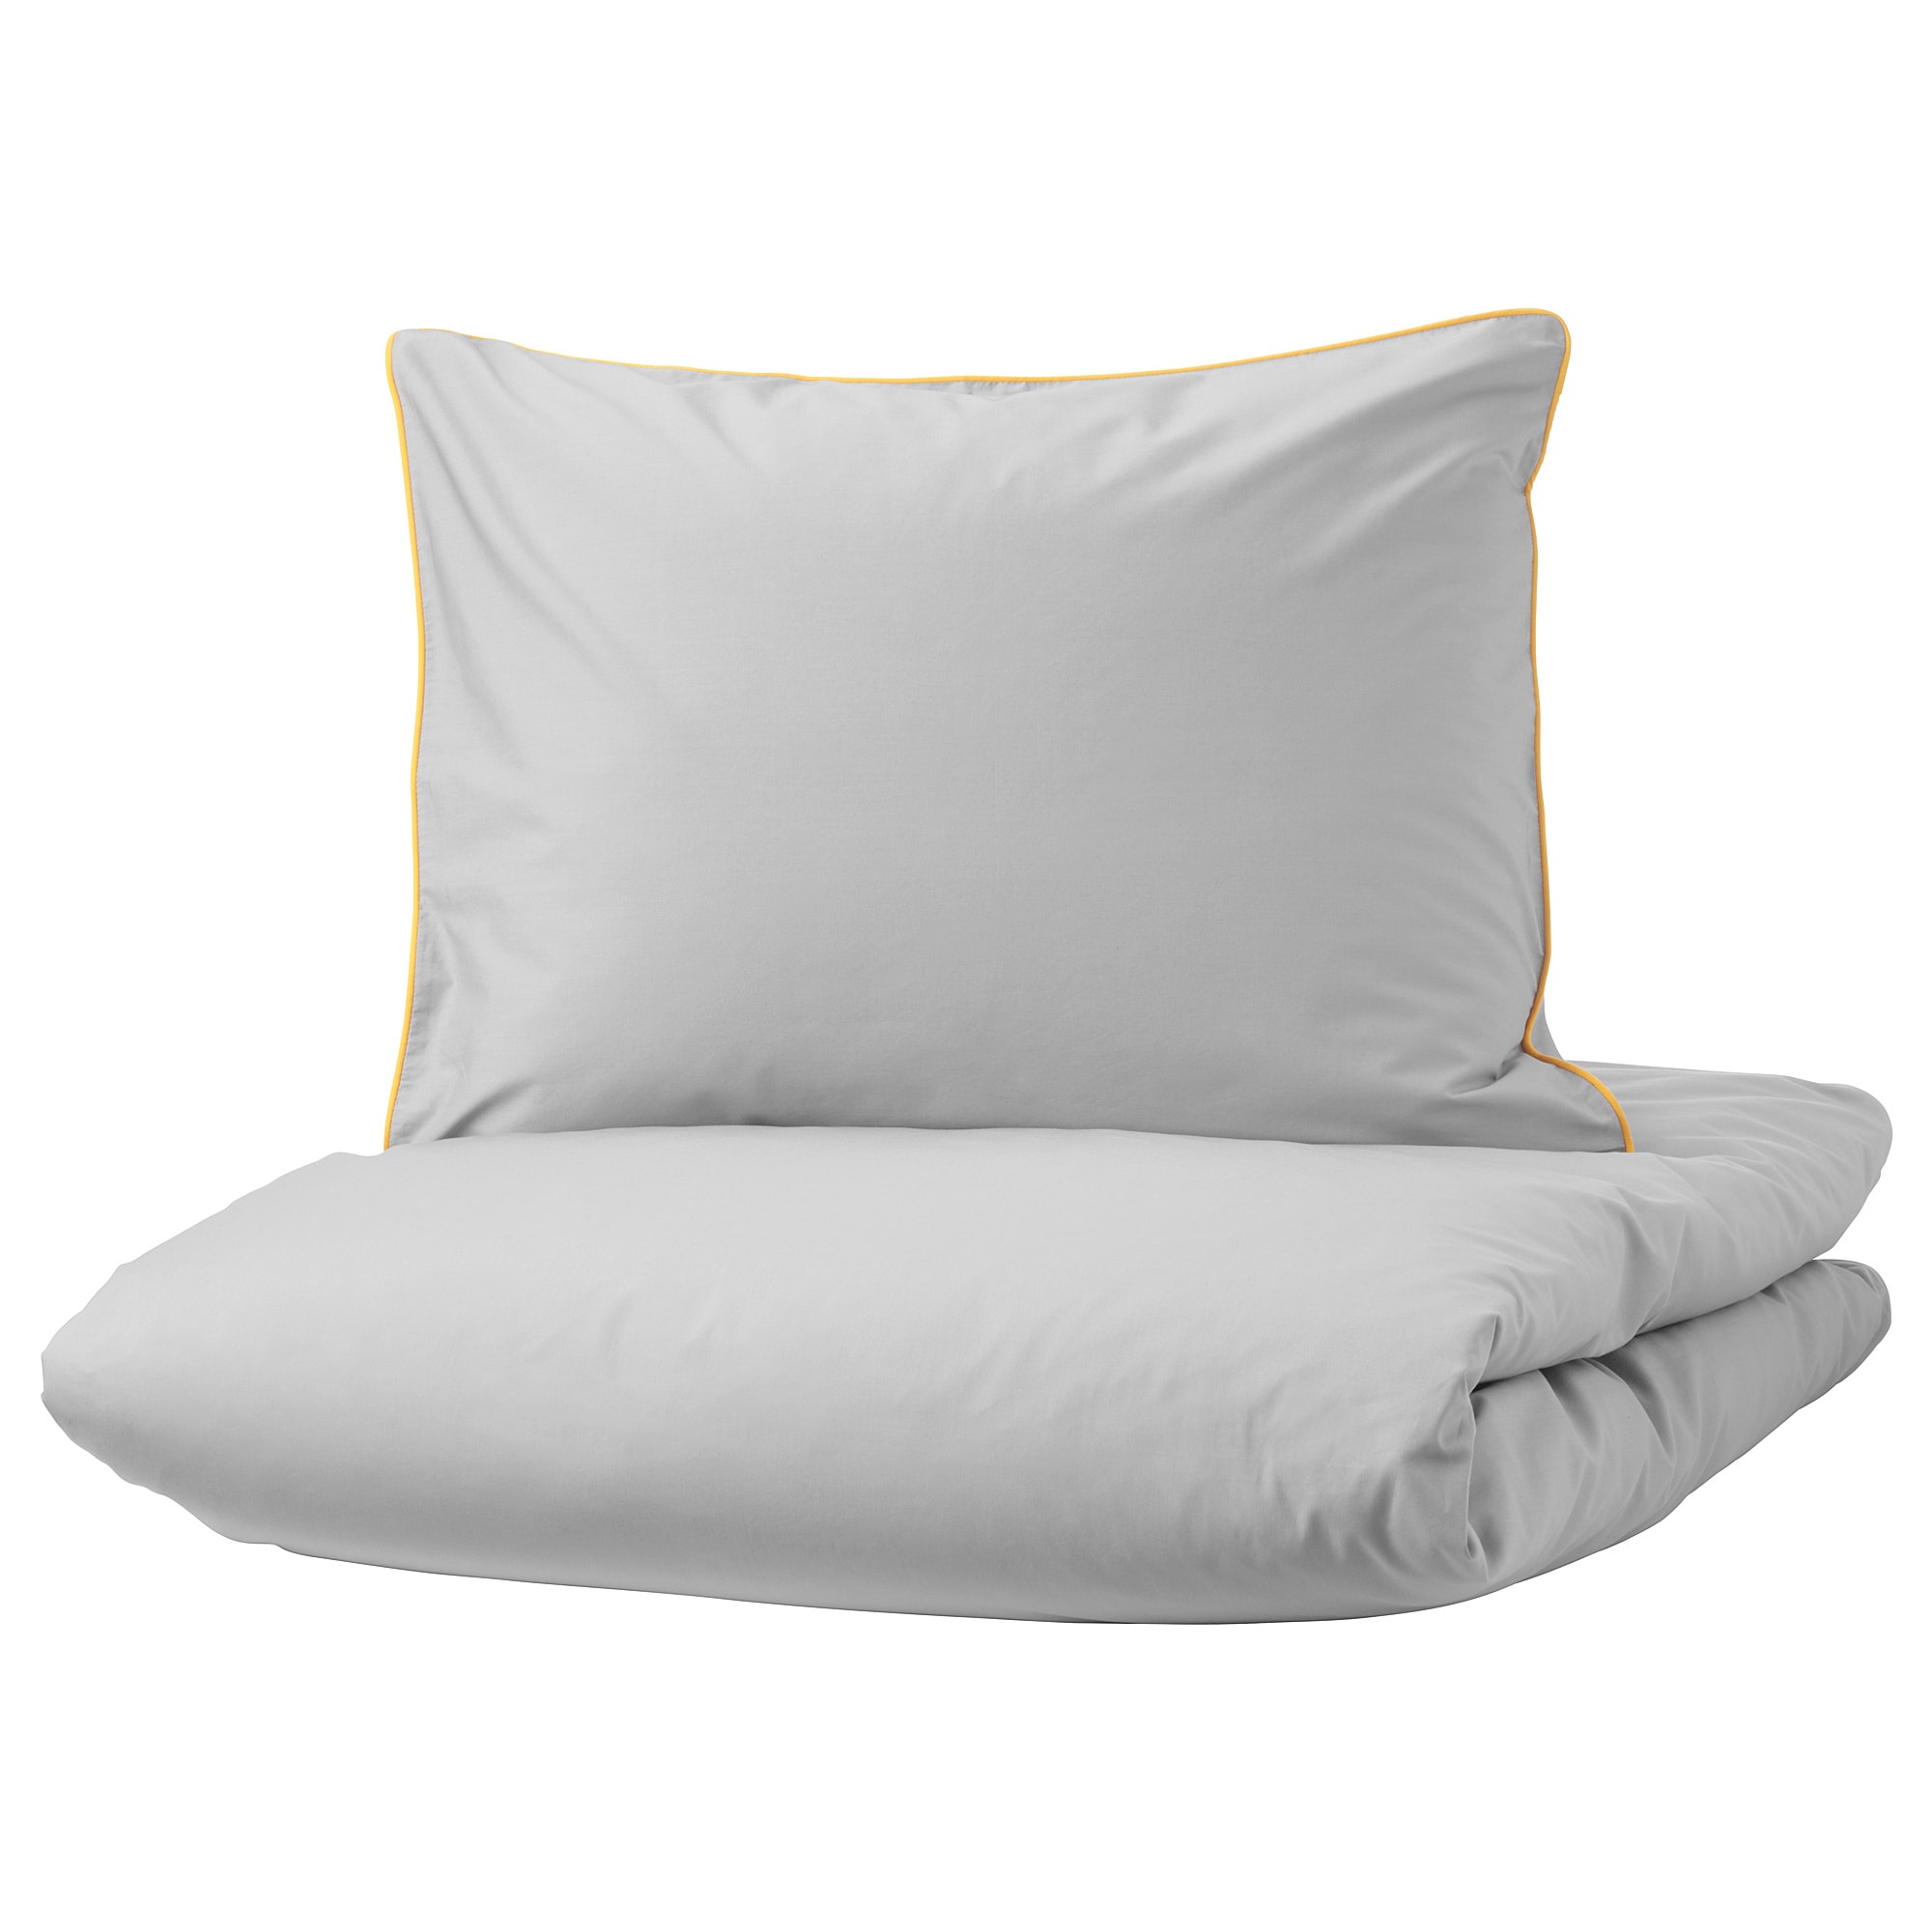 KUNGSBLOMMA - комплект постельного белья серый, желтый